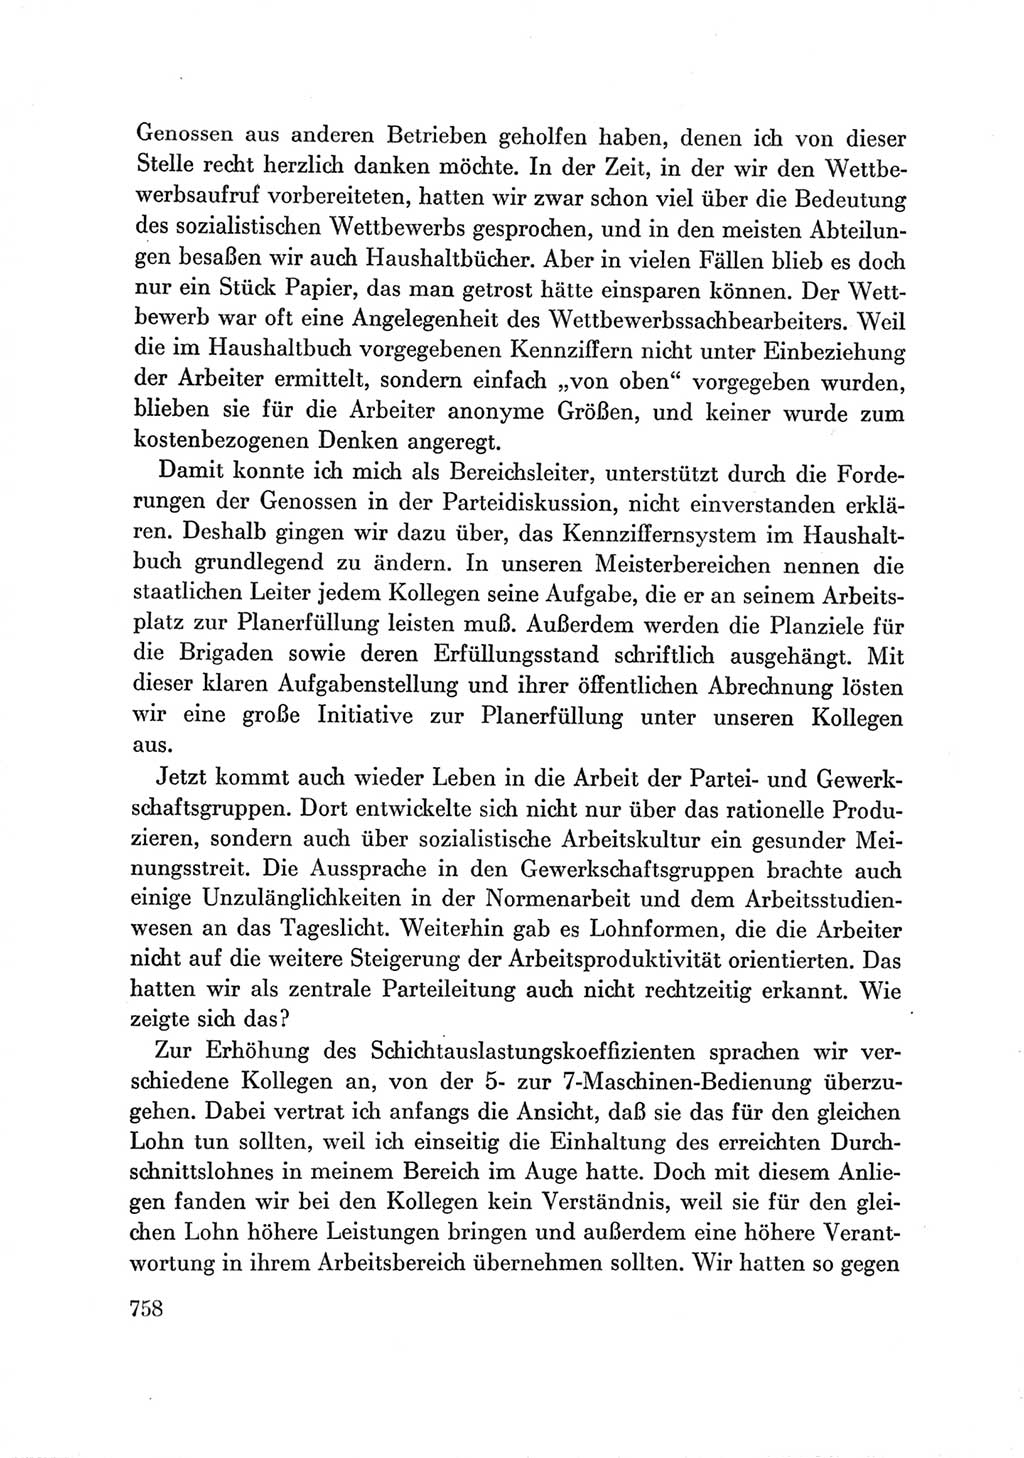 Protokoll der Verhandlungen des Ⅶ. Parteitages der Sozialistischen Einheitspartei Deutschlands (SED) [Deutsche Demokratische Republik (DDR)] 1967, Band Ⅲ, Seite 758 (Prot. Verh. Ⅶ. PT SED DDR 1967, Bd. Ⅲ, S. 758)